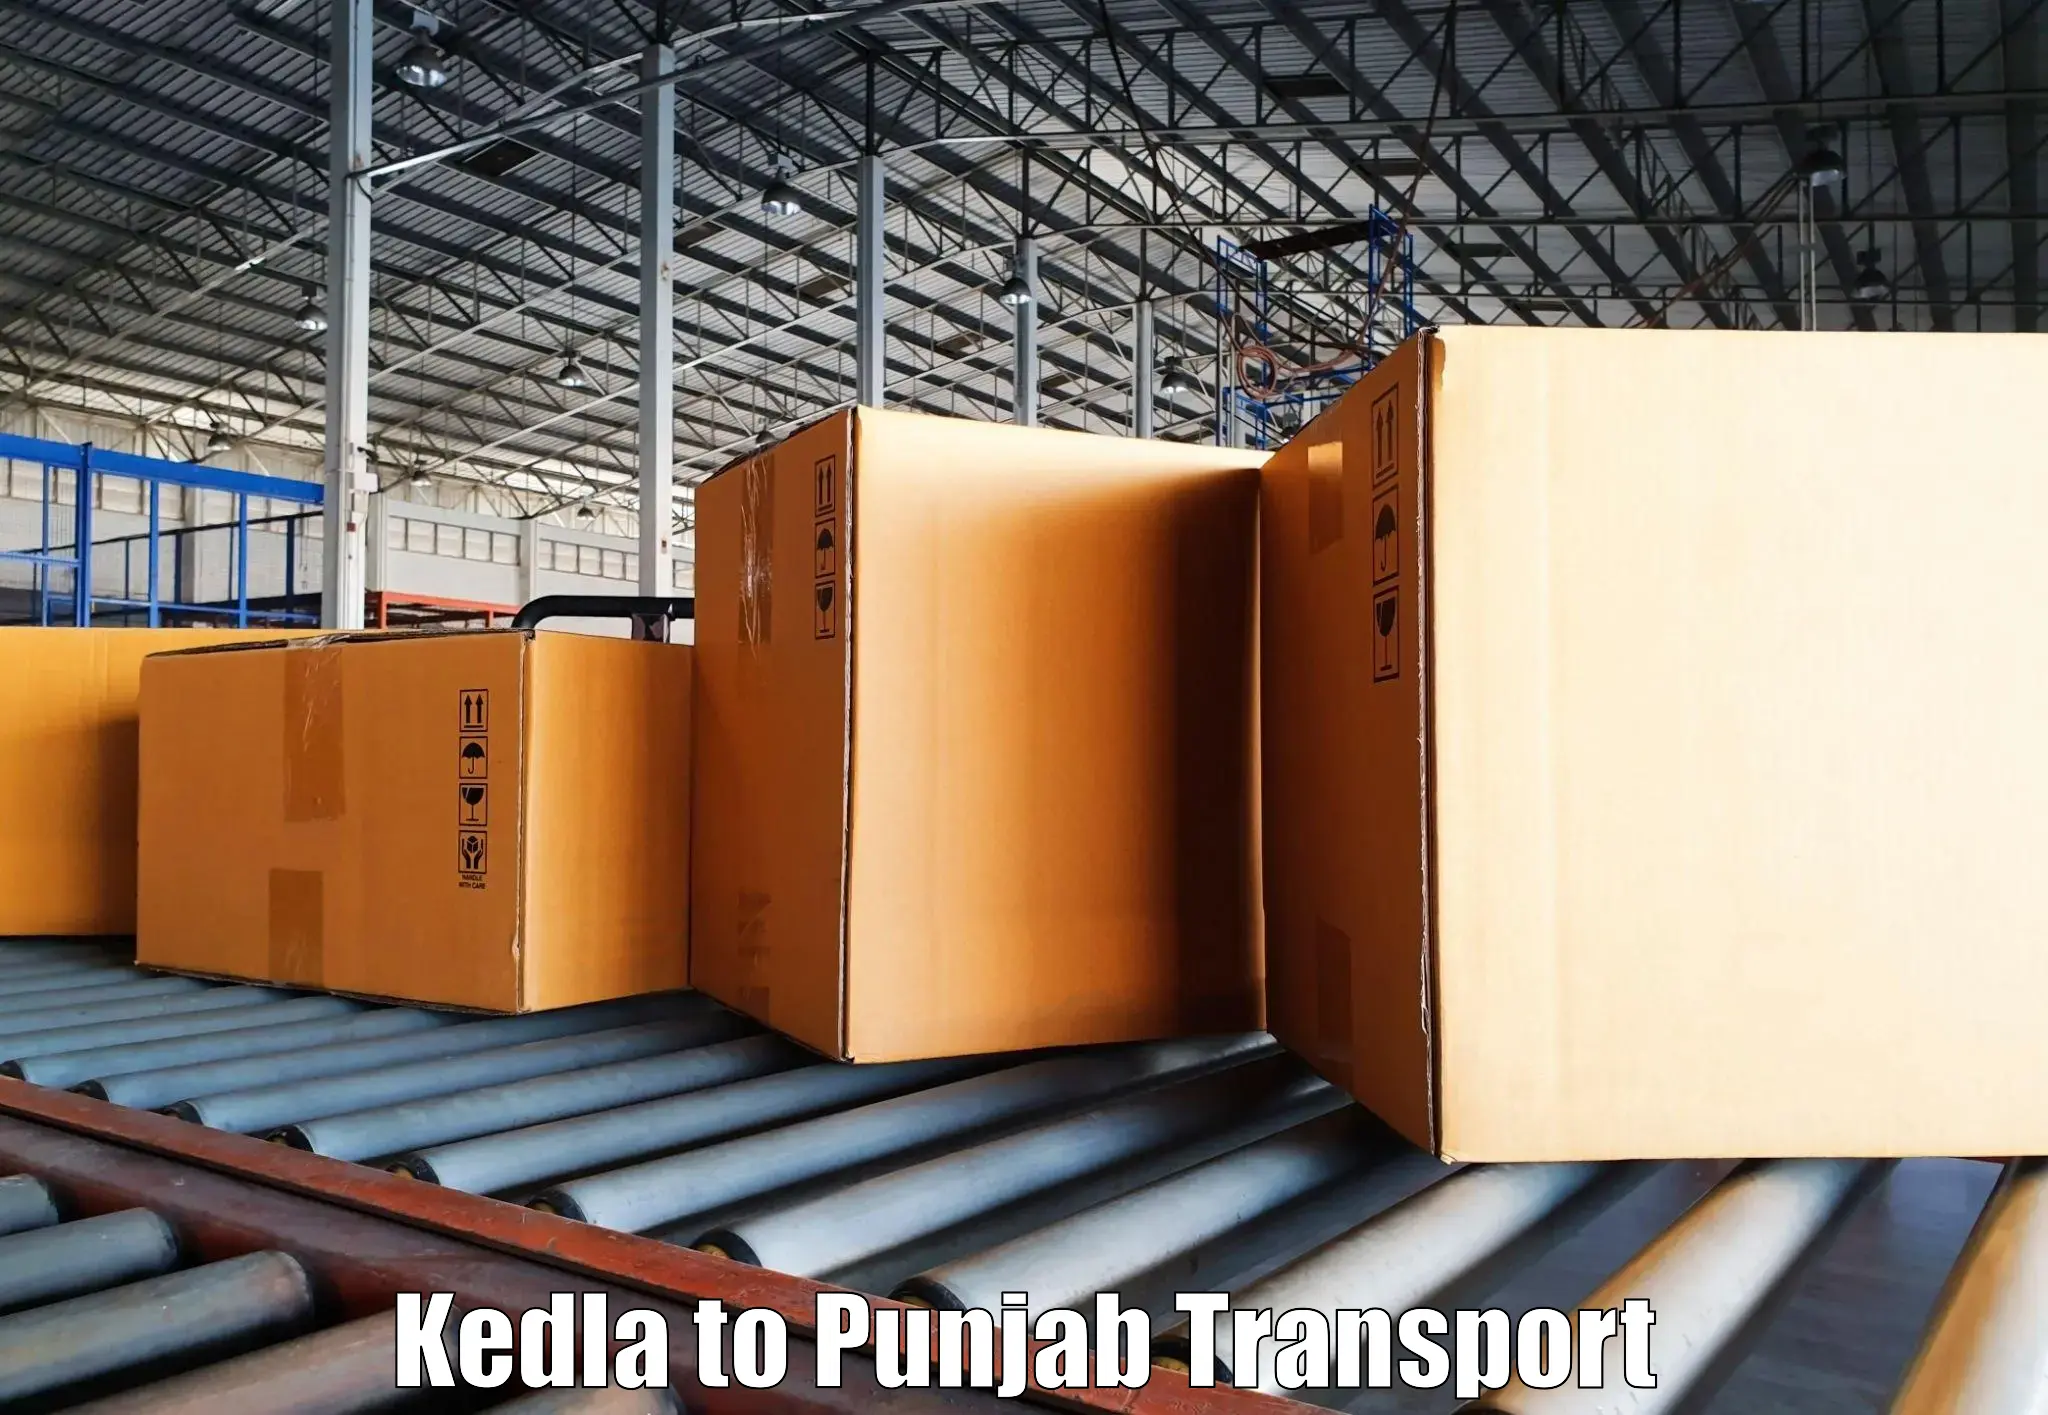 Bike transfer Kedla to Punjab